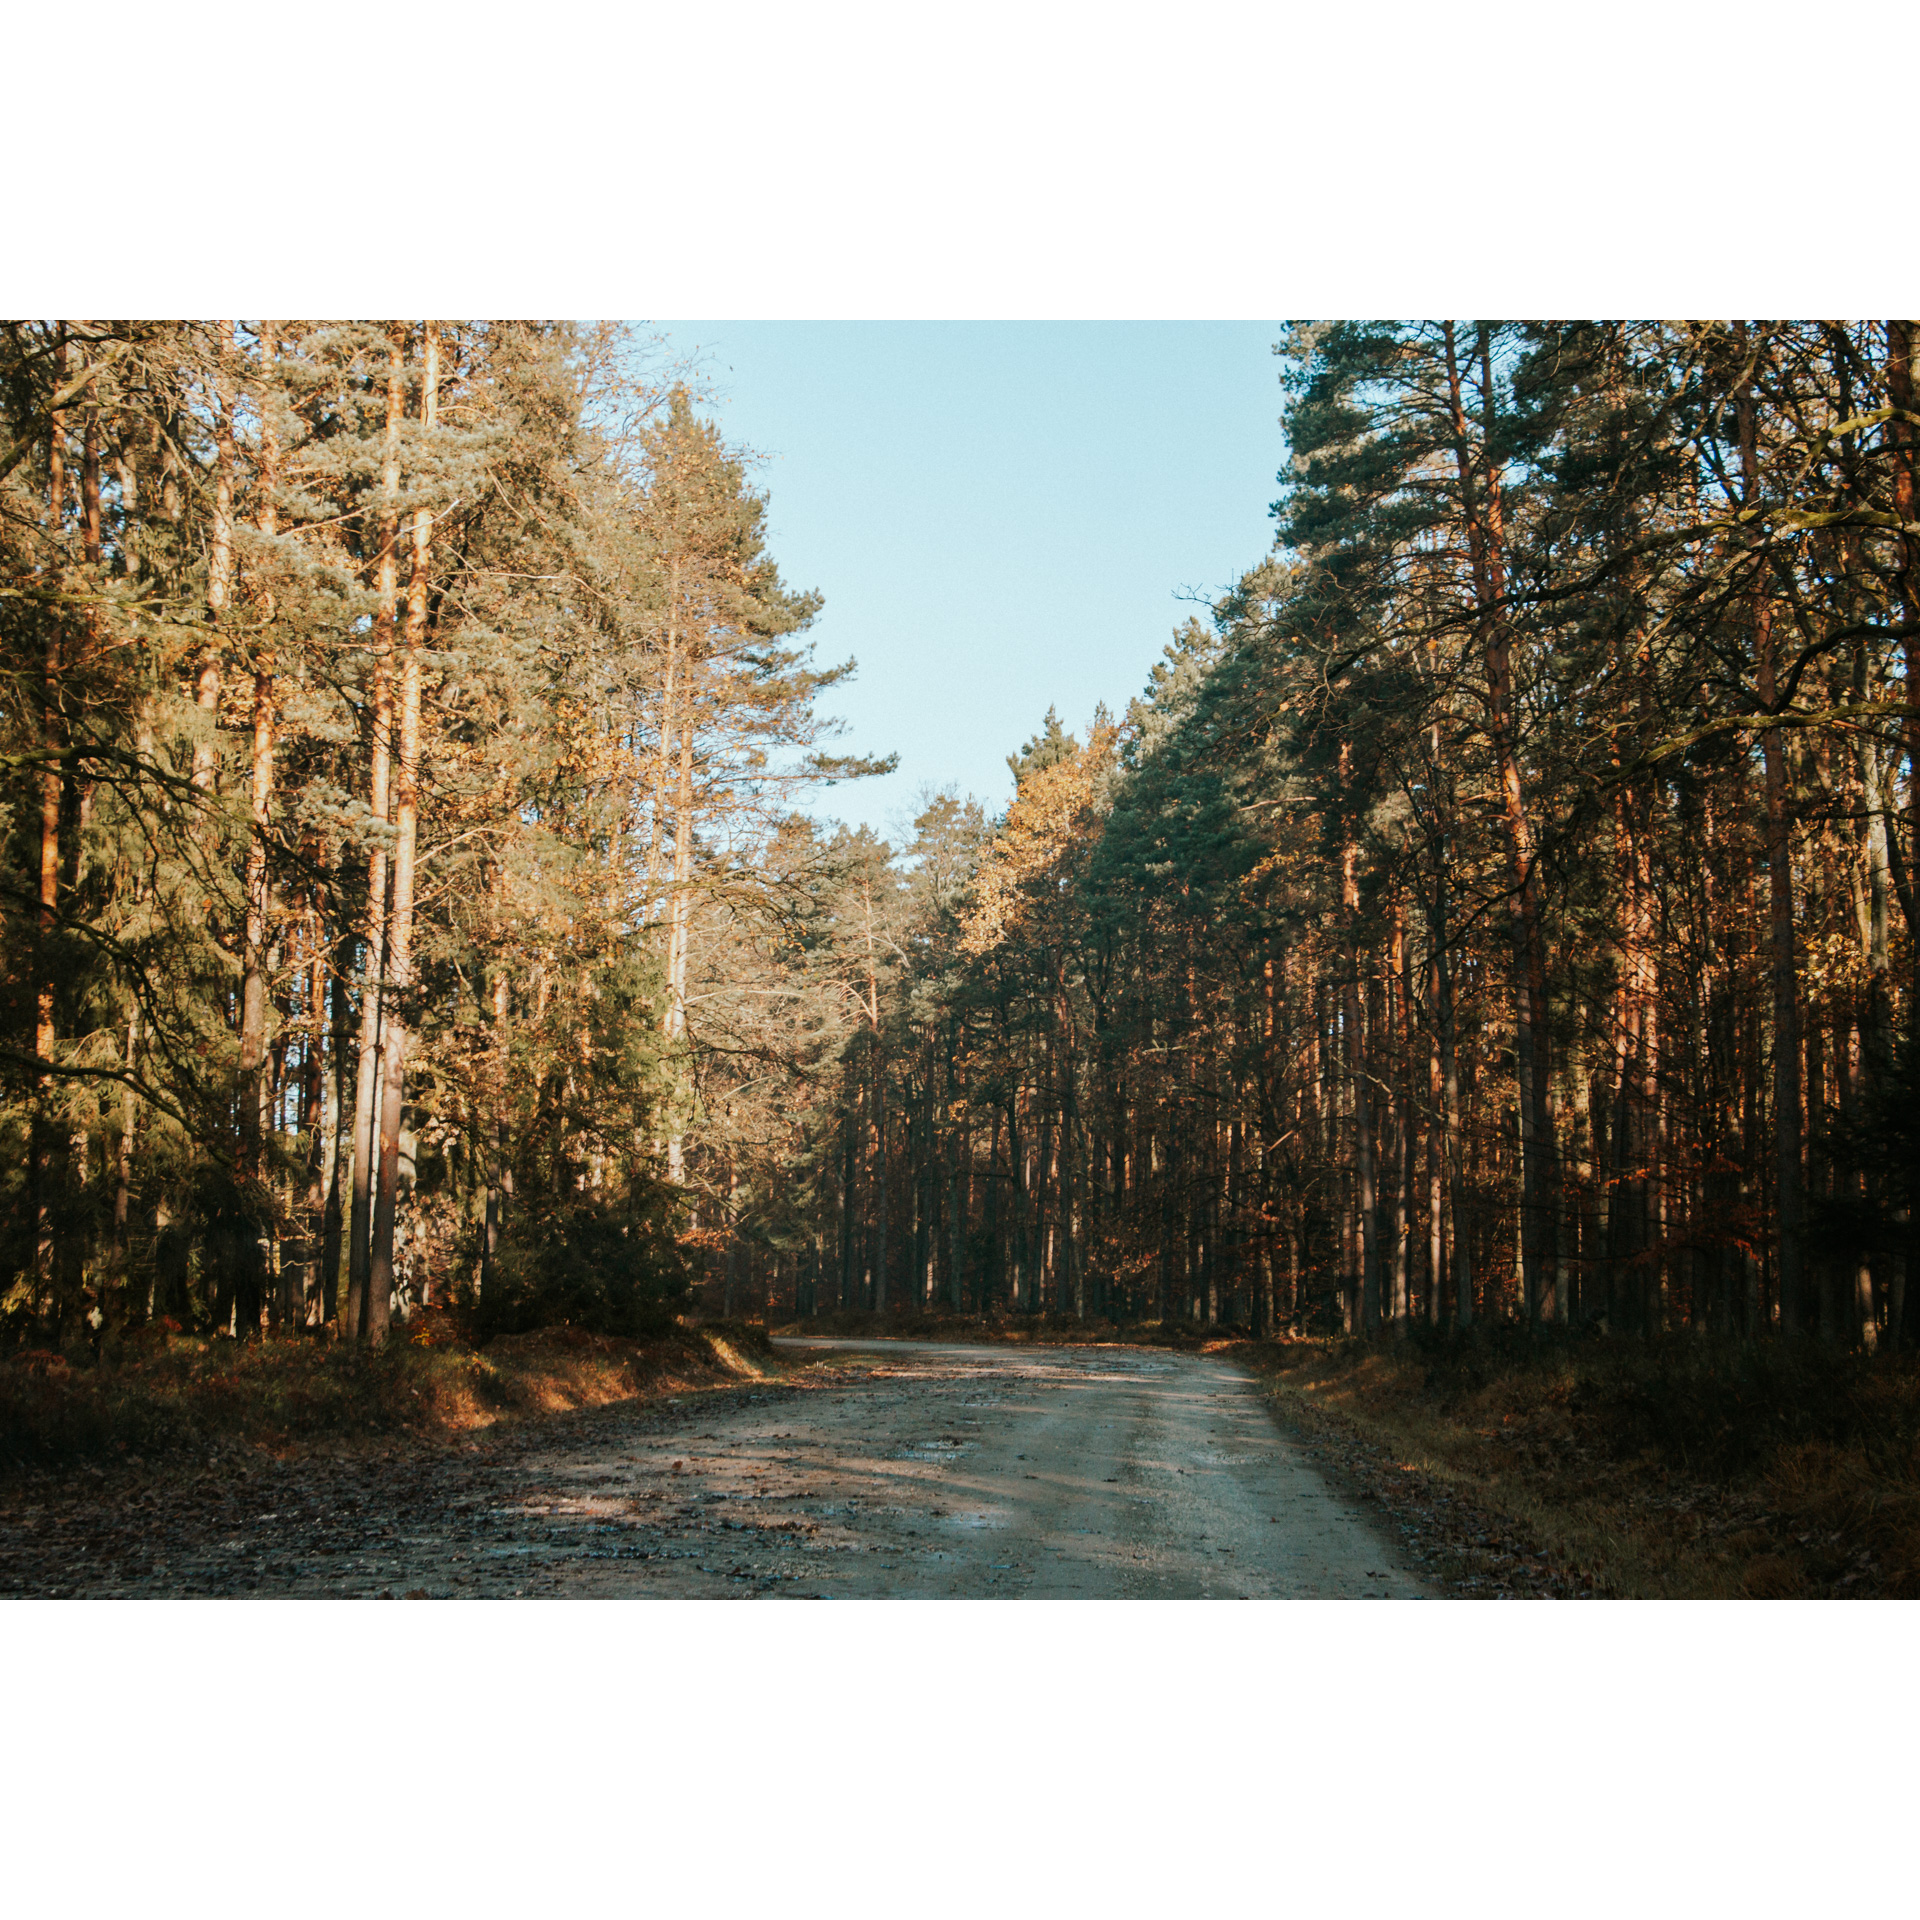 Utwardzona, kamienista droga prowadząca przez las wśród wysokich drzew iglastych